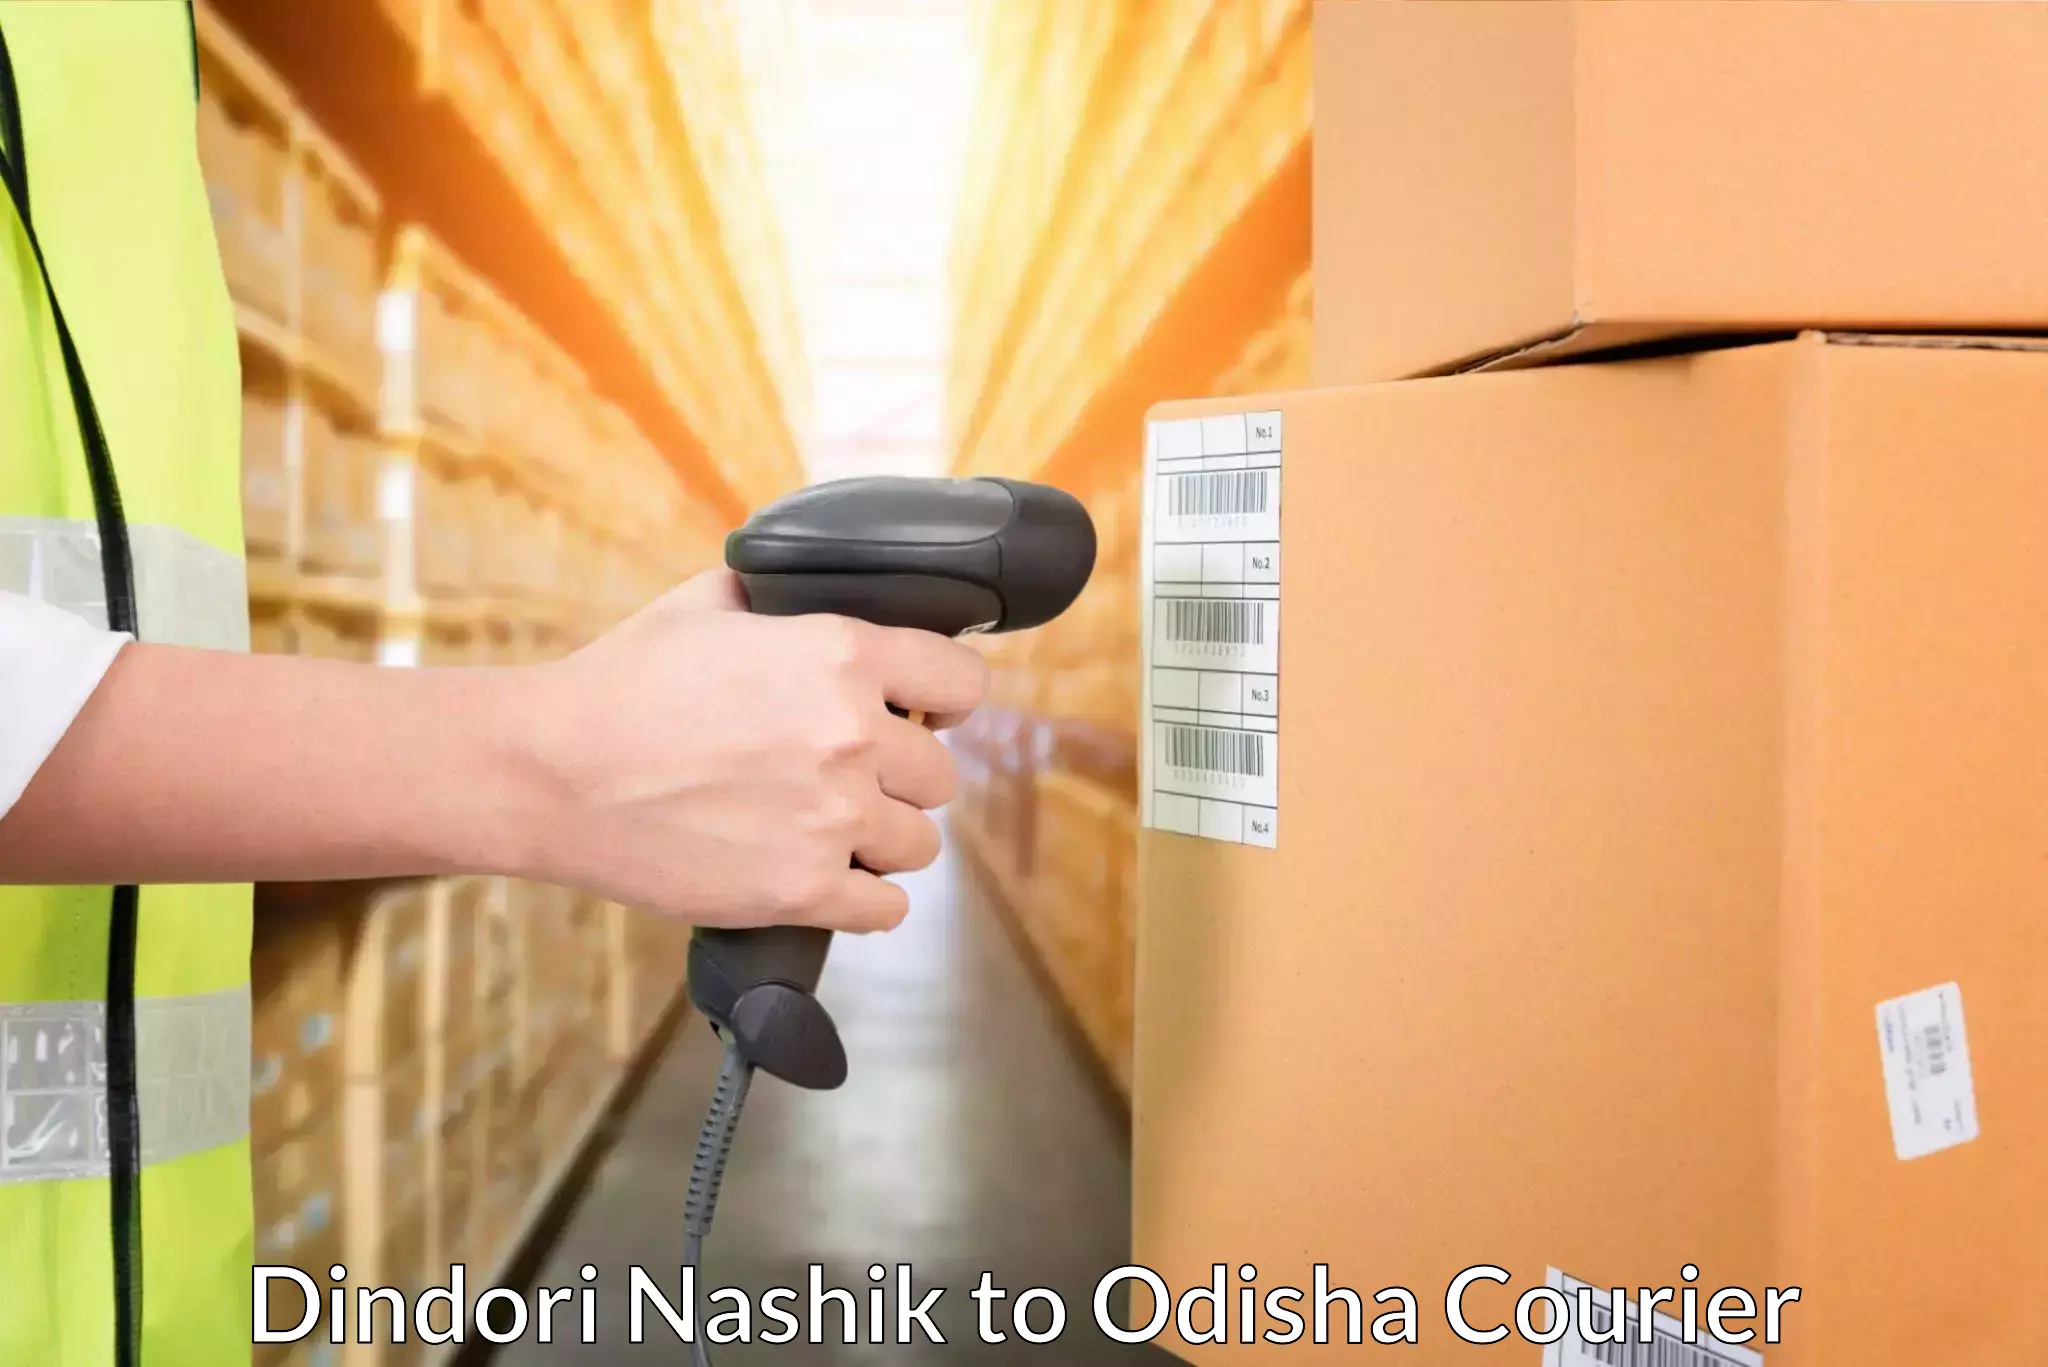 International parcel service Dindori Nashik to Pipili